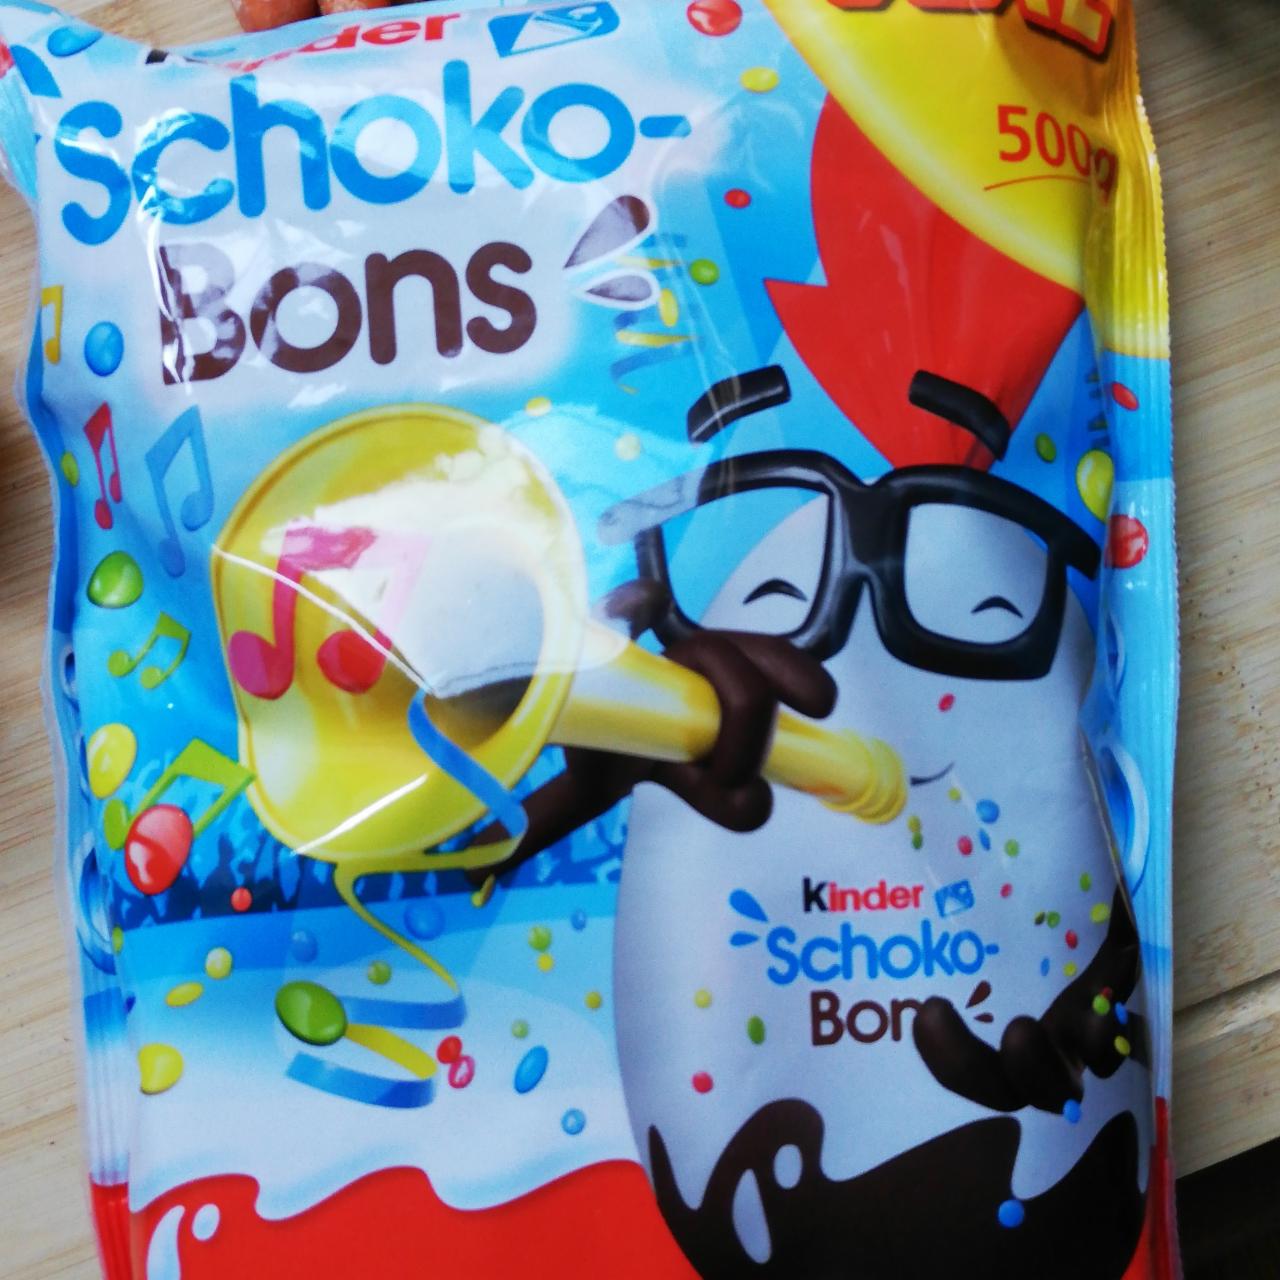 Képek - Schoko-bons tejcsokoládé bonbonok tejes krémmel és mogyoródarabkákkal töltve Kinder